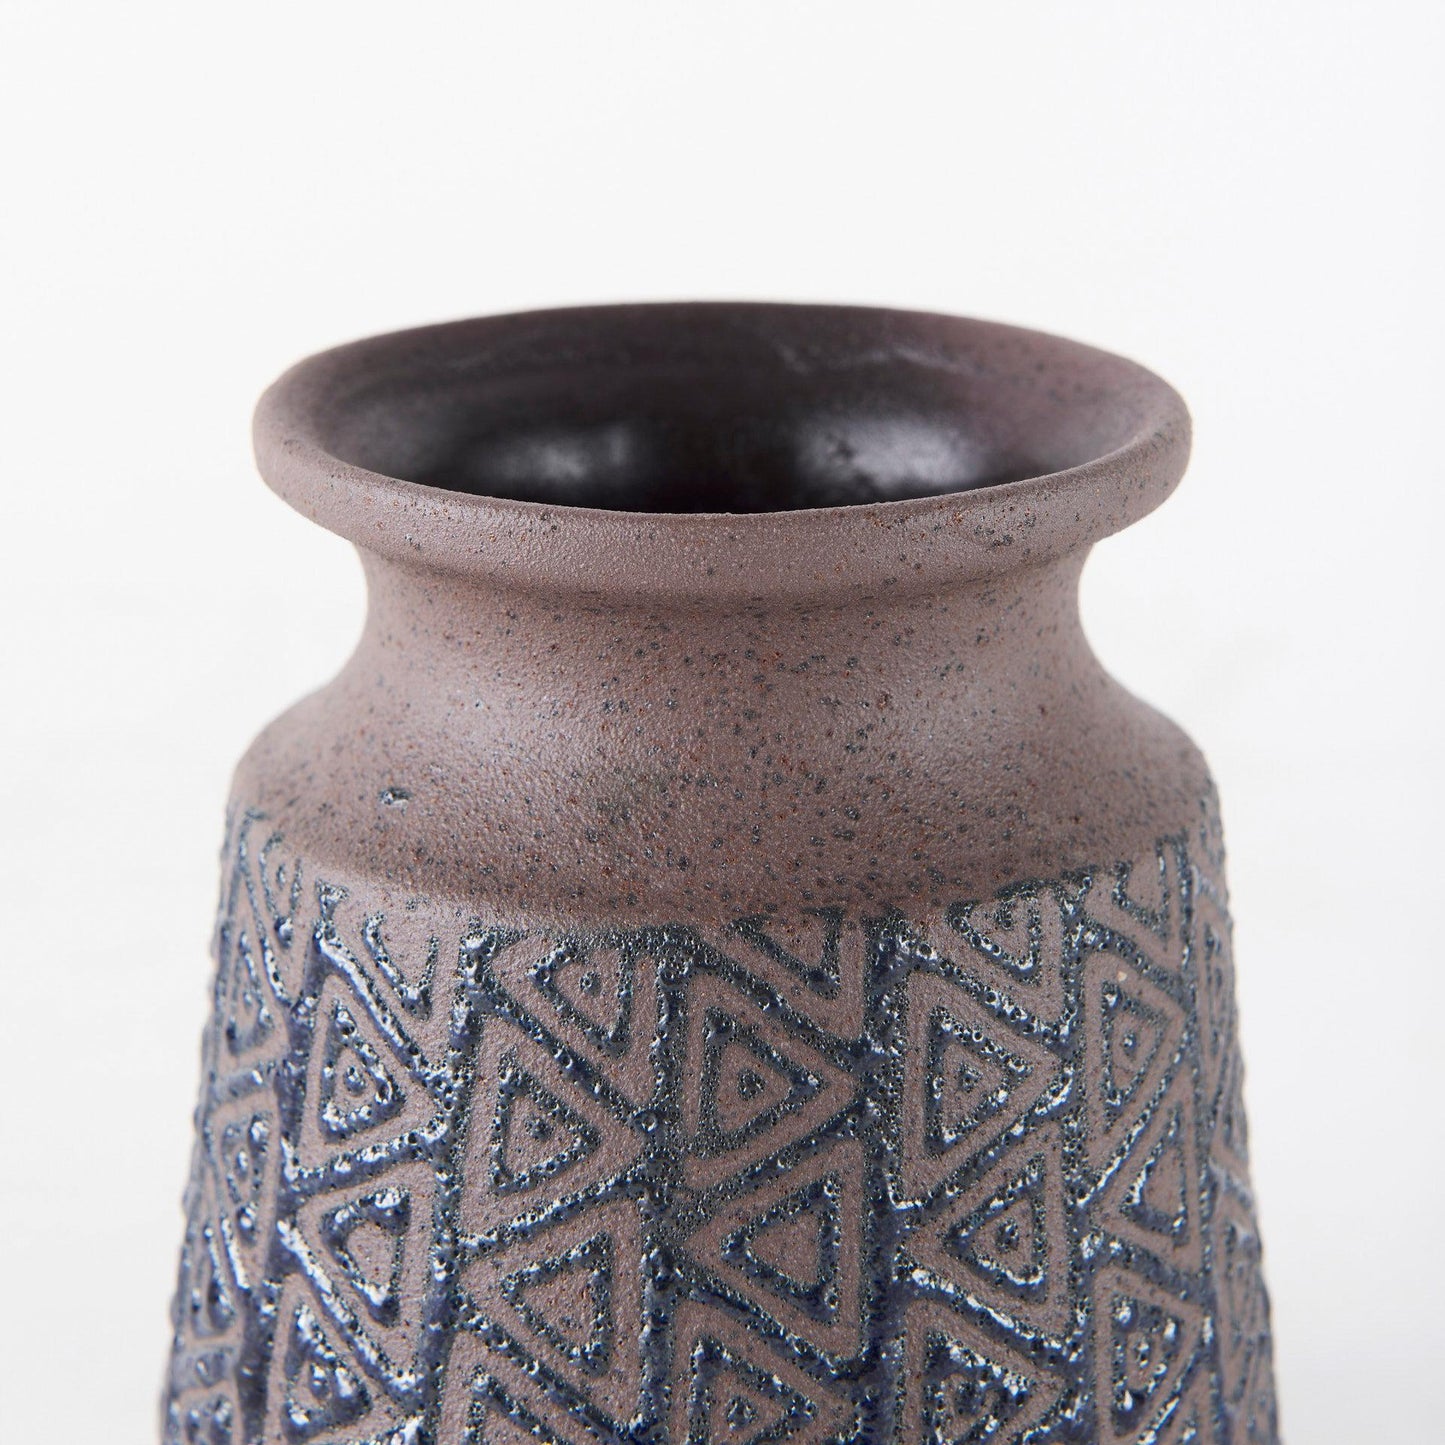 Sefina I Small Brown/Black Patterned Ceramic Vase